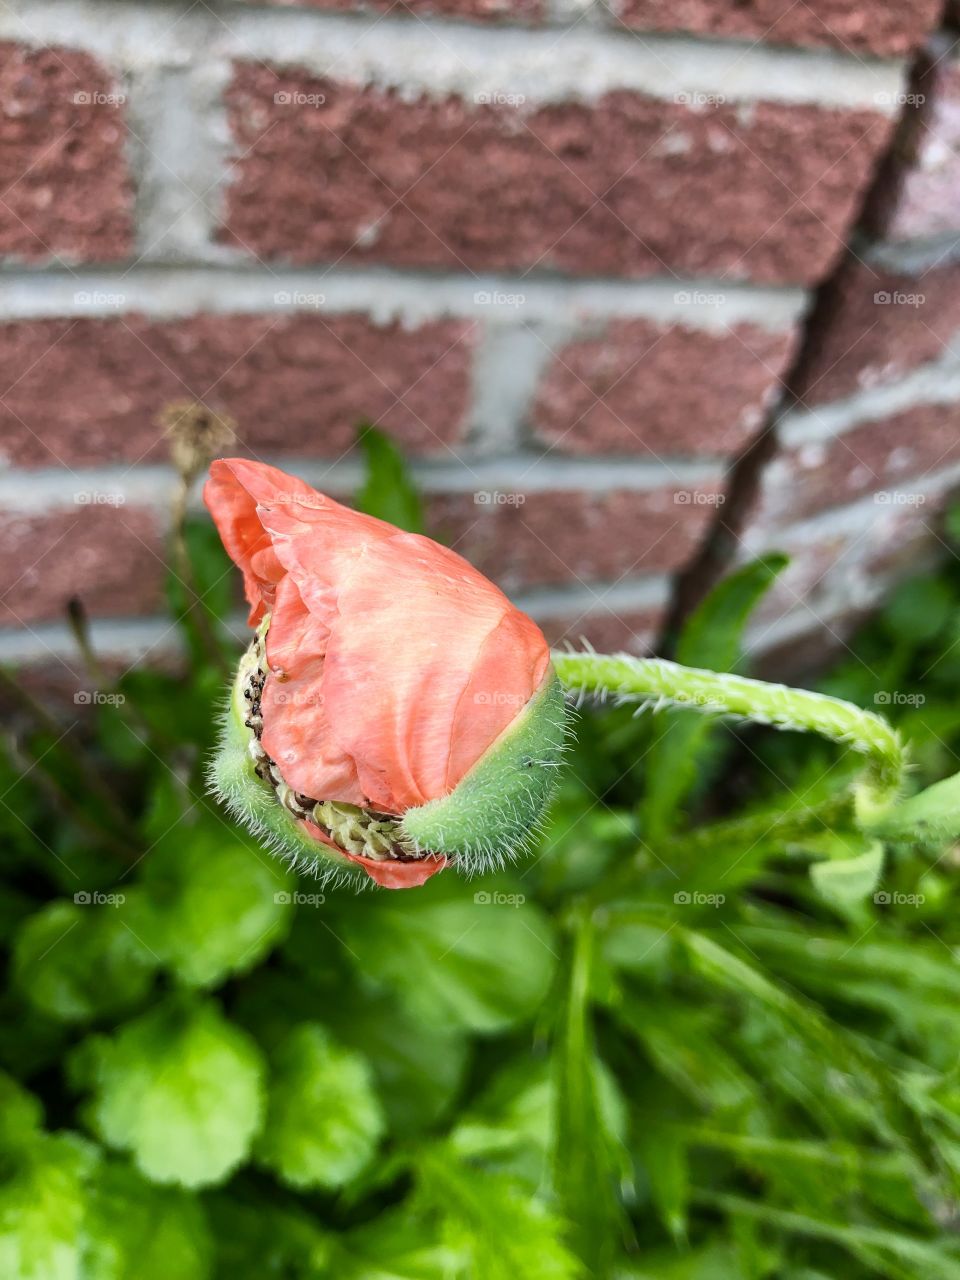 Flower in bud 